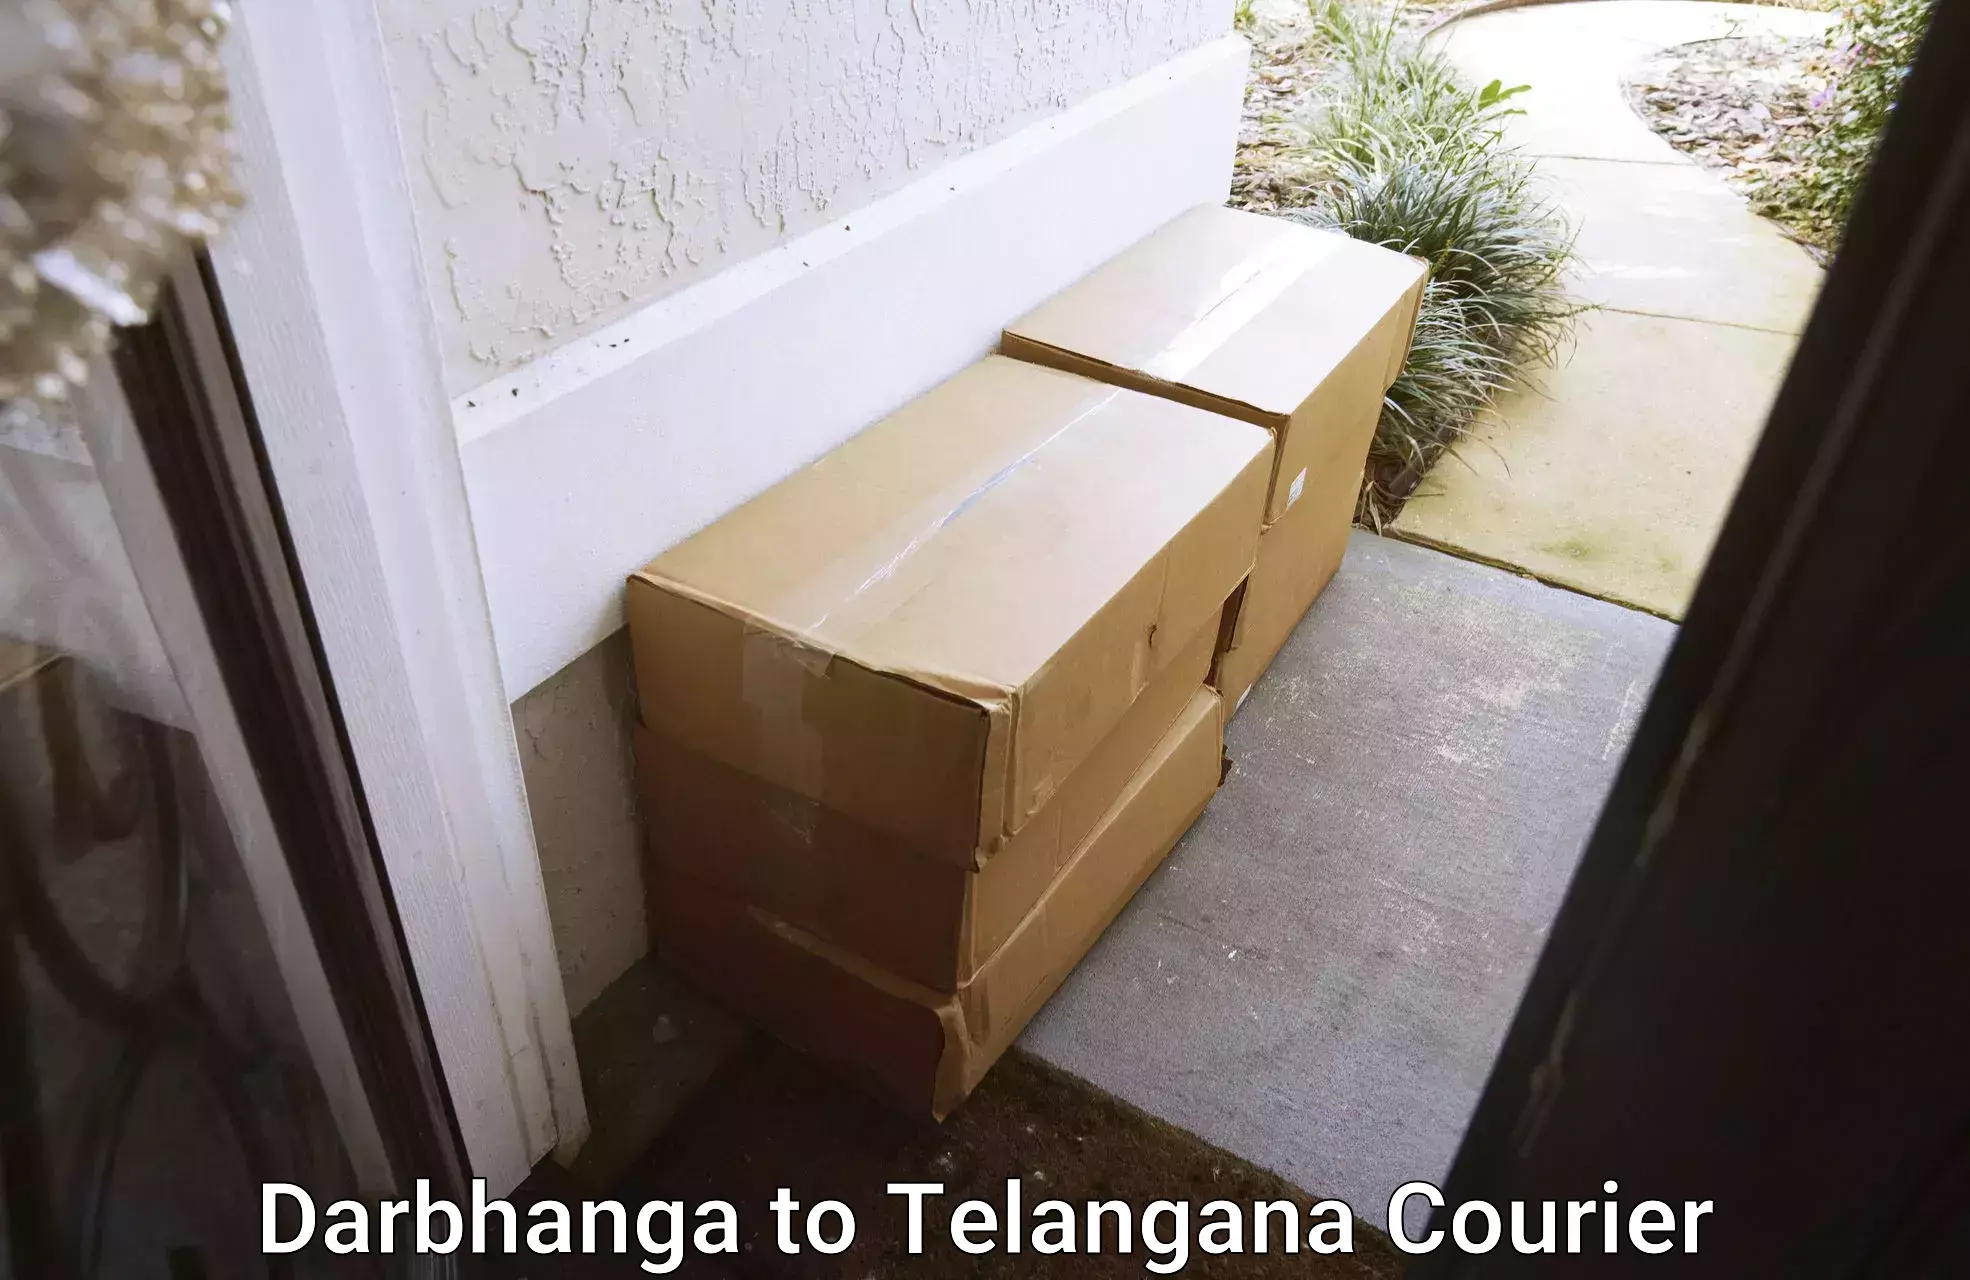 Full-service household moving Darbhanga to Manuguru